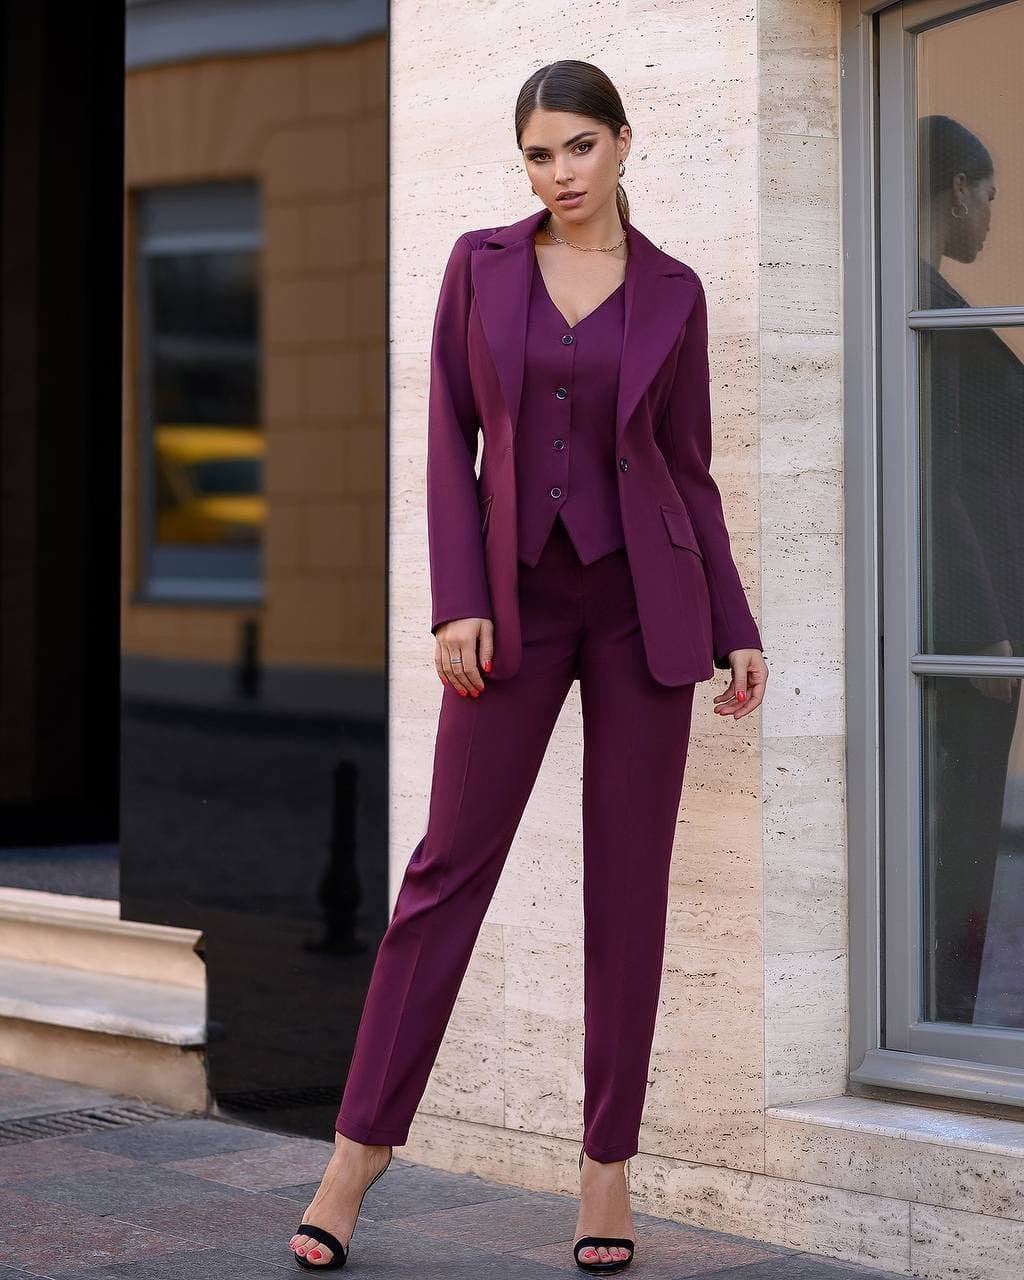 Three-piece Suit, Womens Suit, Pants Blazer Top, Womens Suit Set